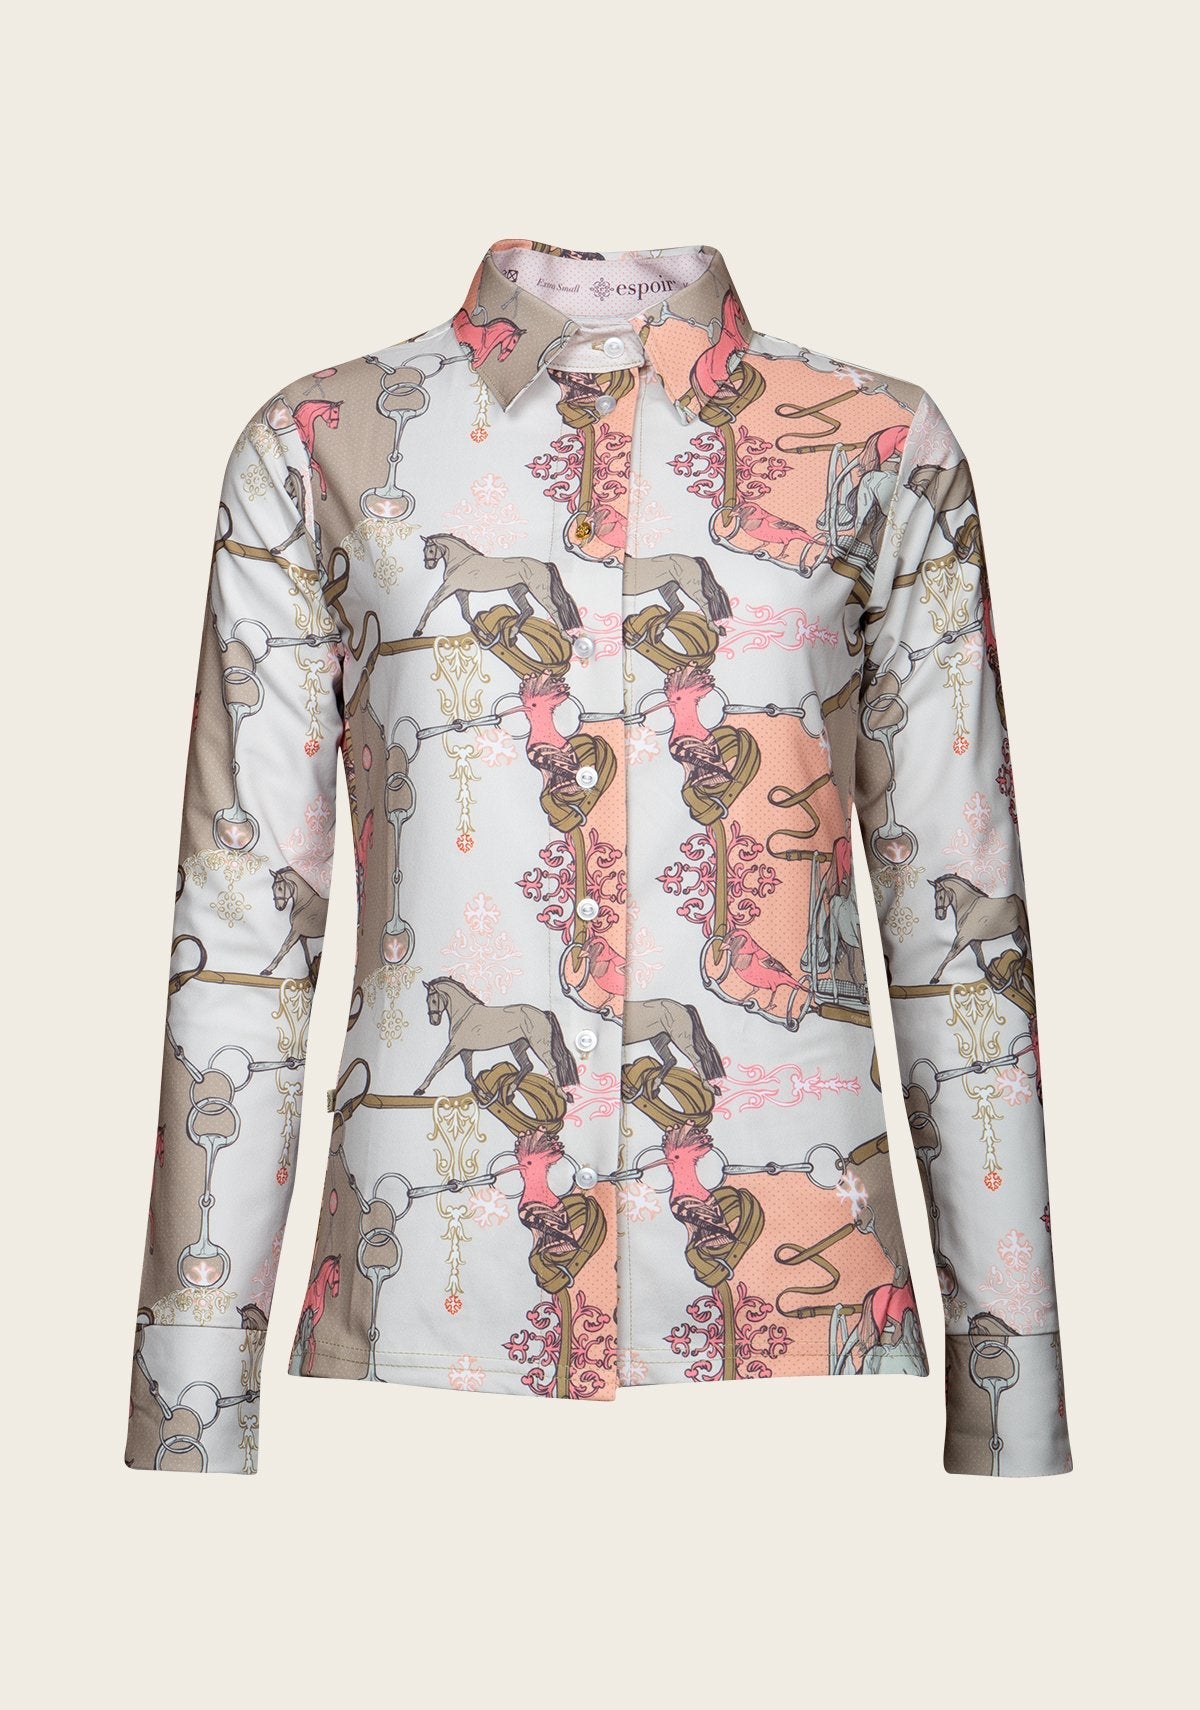 Espoir Peach & Beige Carnival Ladies’ Button Shirt by Espoir Equestrian